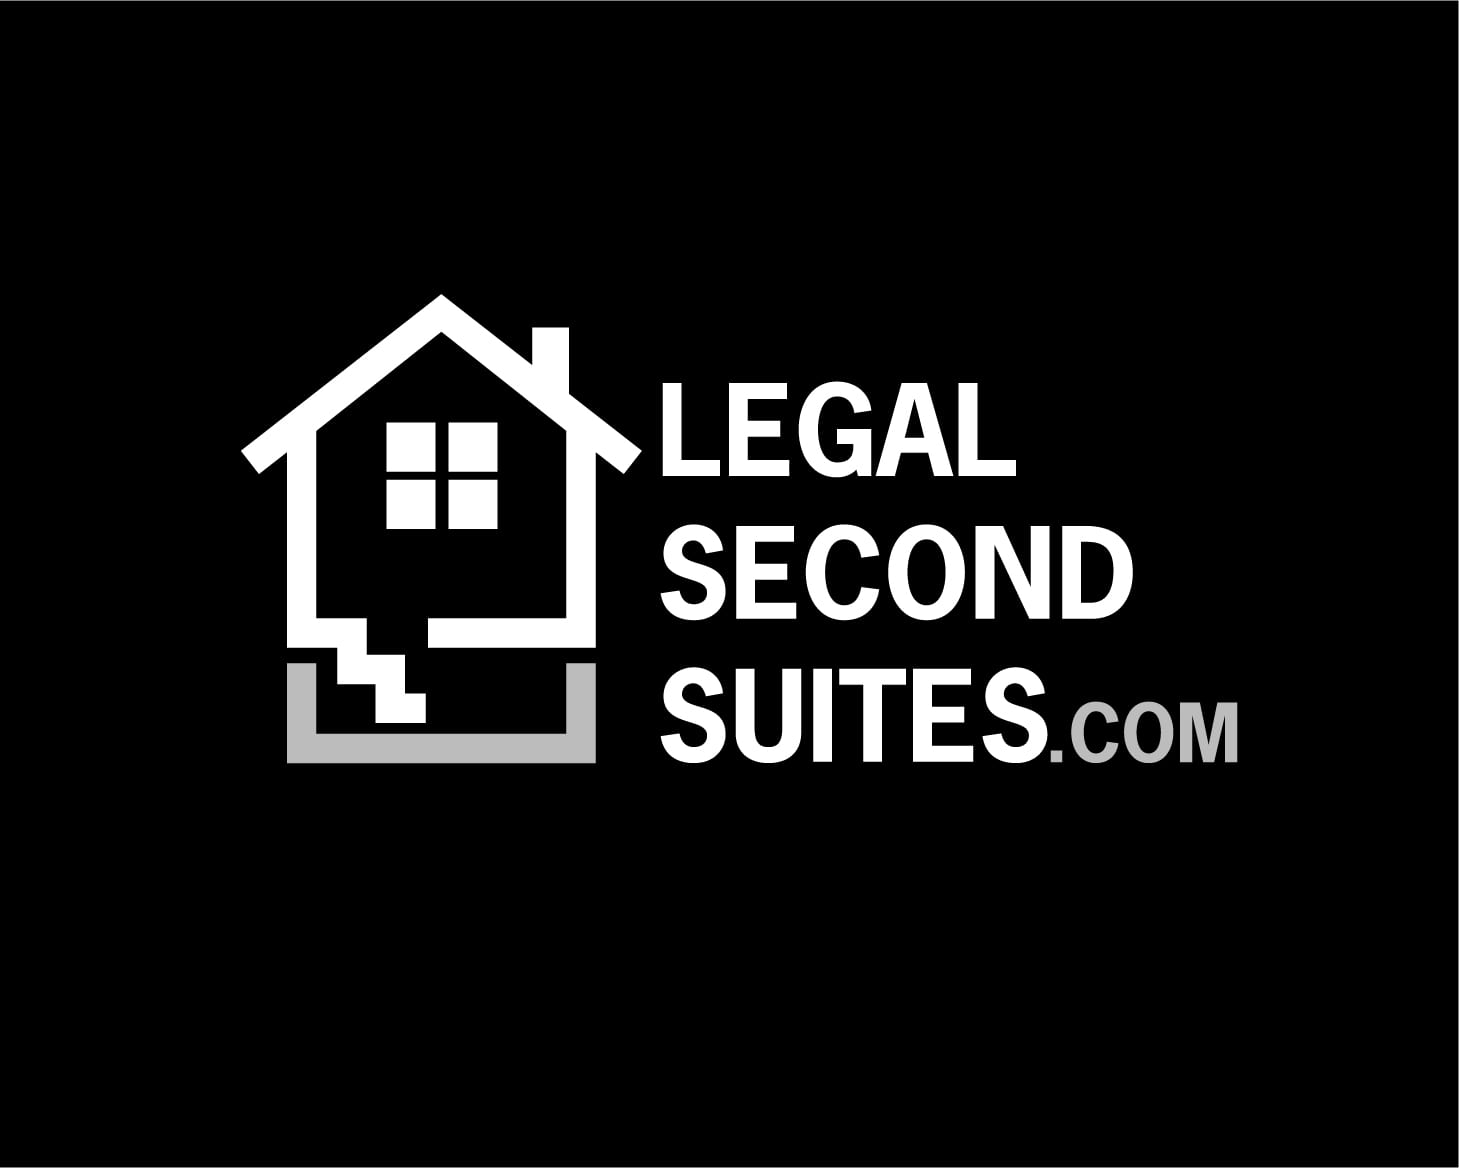 Legal Second Suites